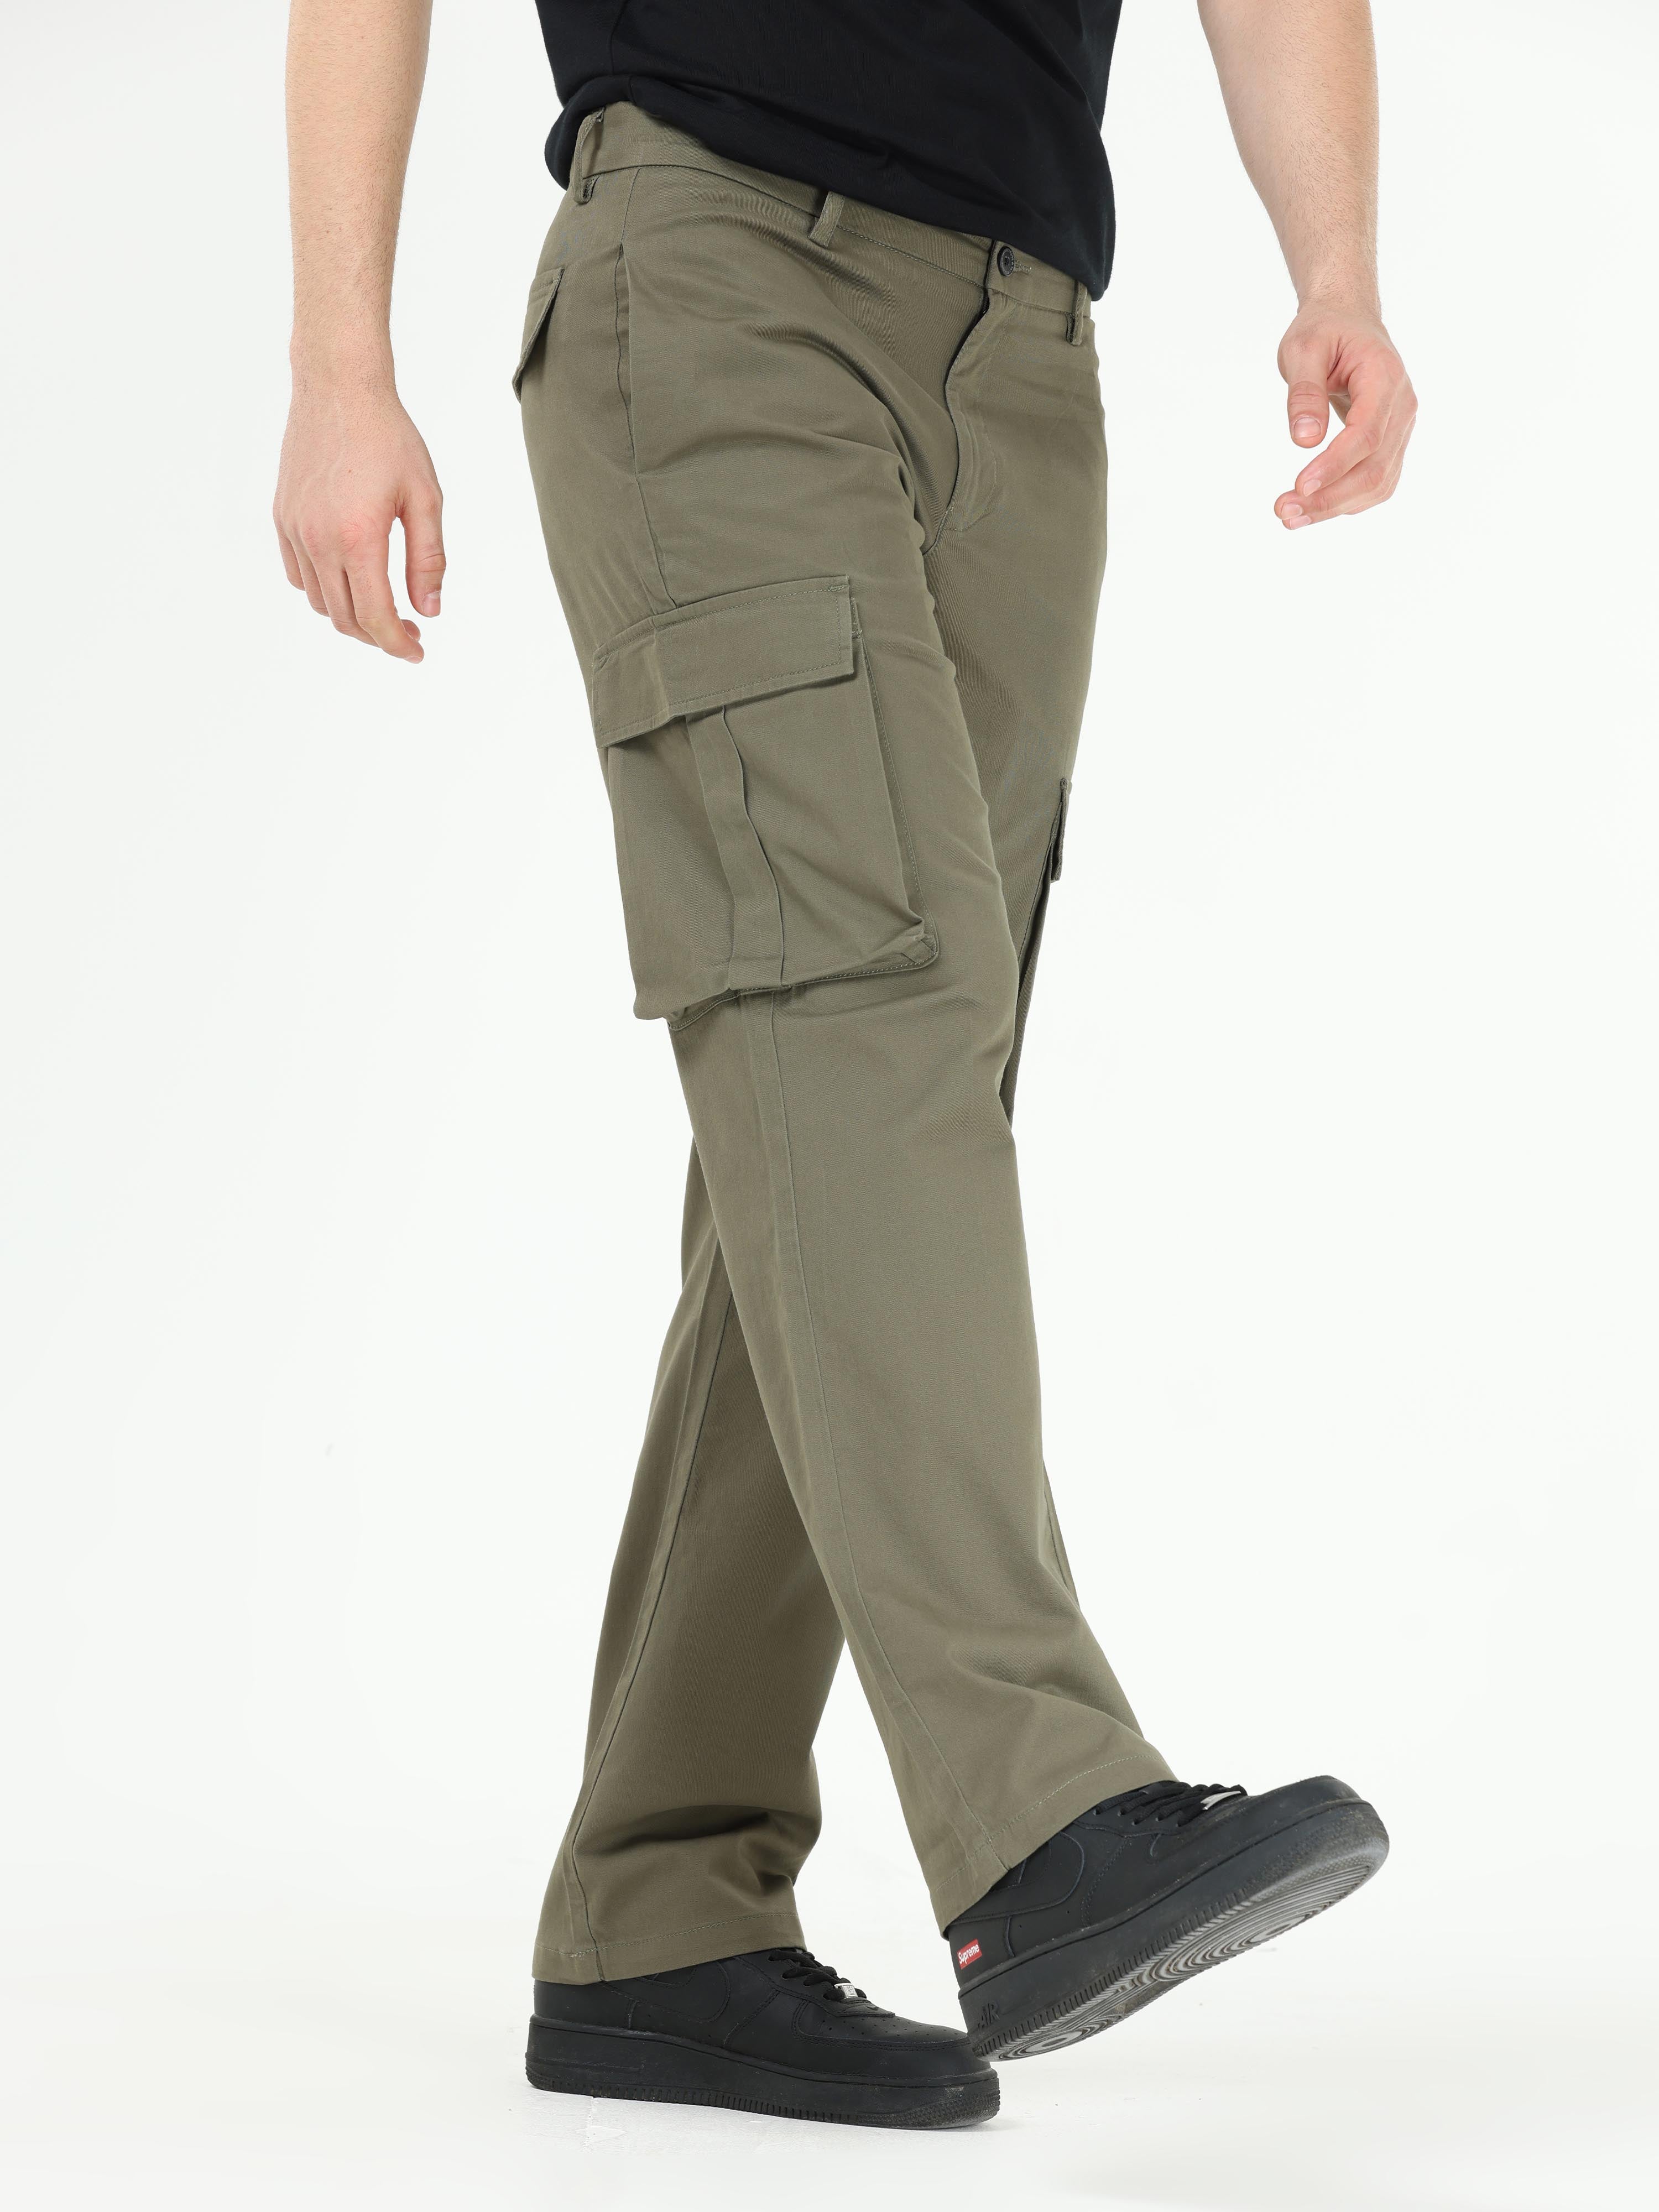 Janeu Men Cargo Pant Light Green with 6 Pocket